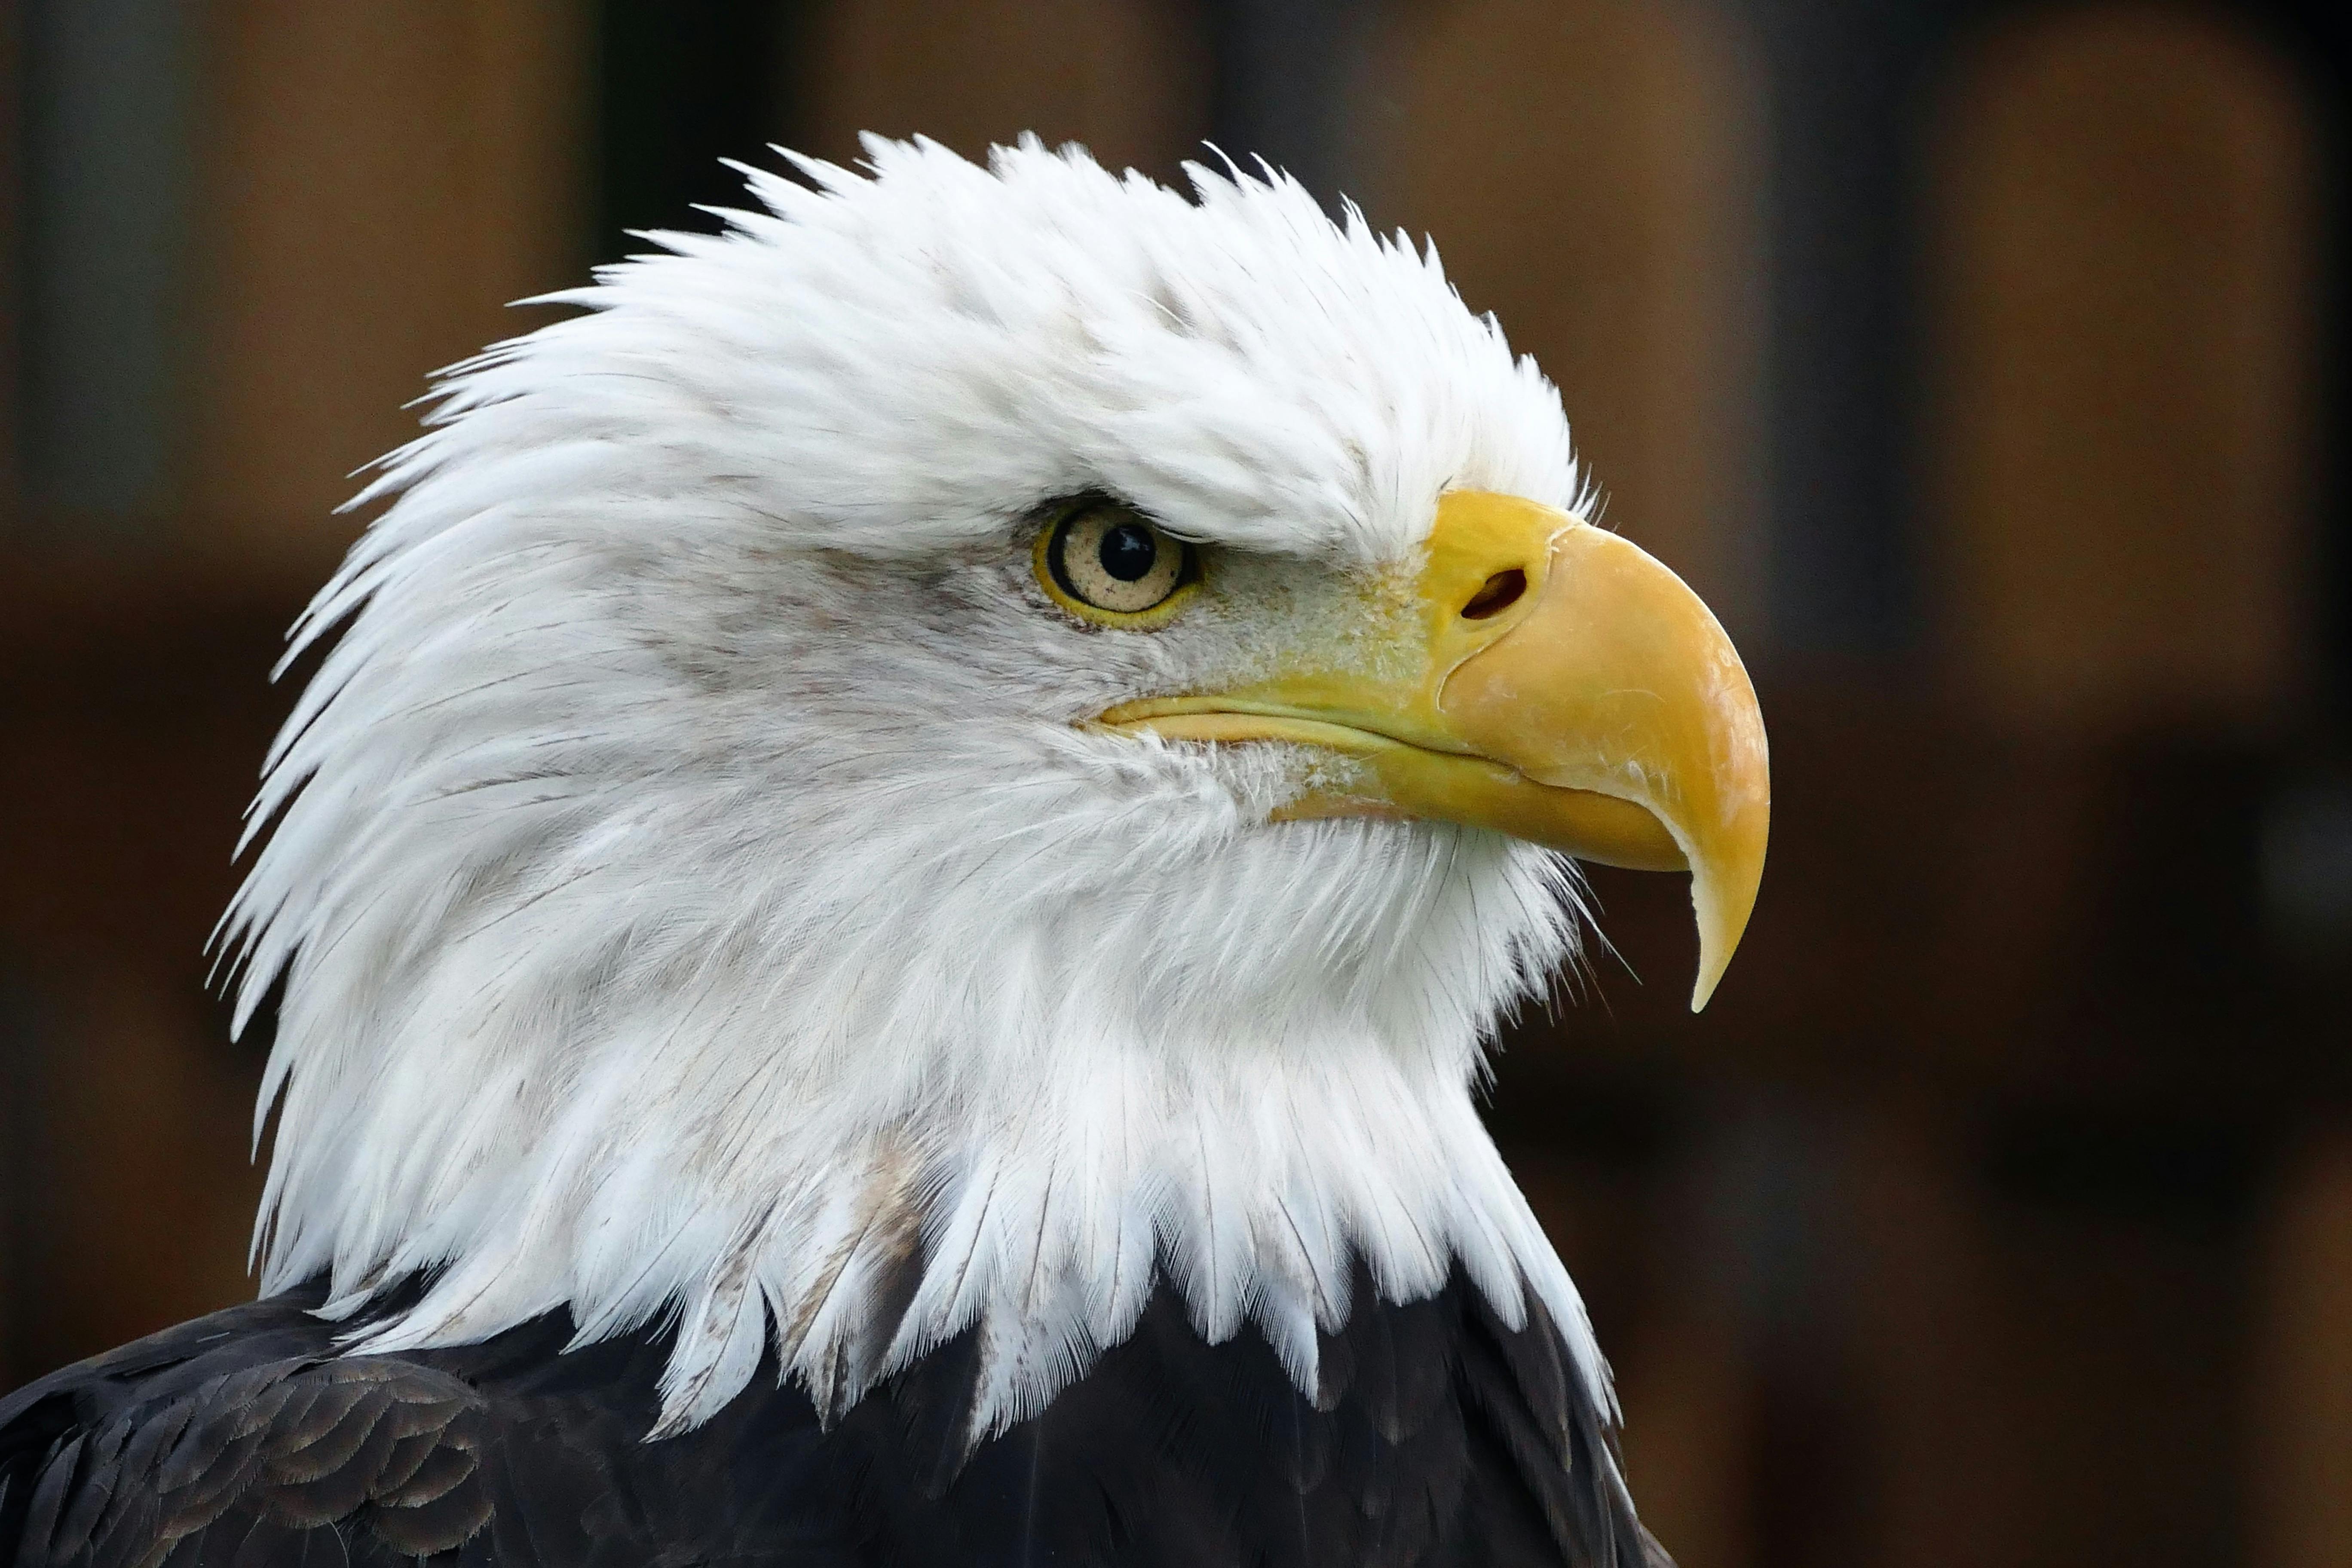 Closeup Photo of Bald Eagle · Free Stock Photo